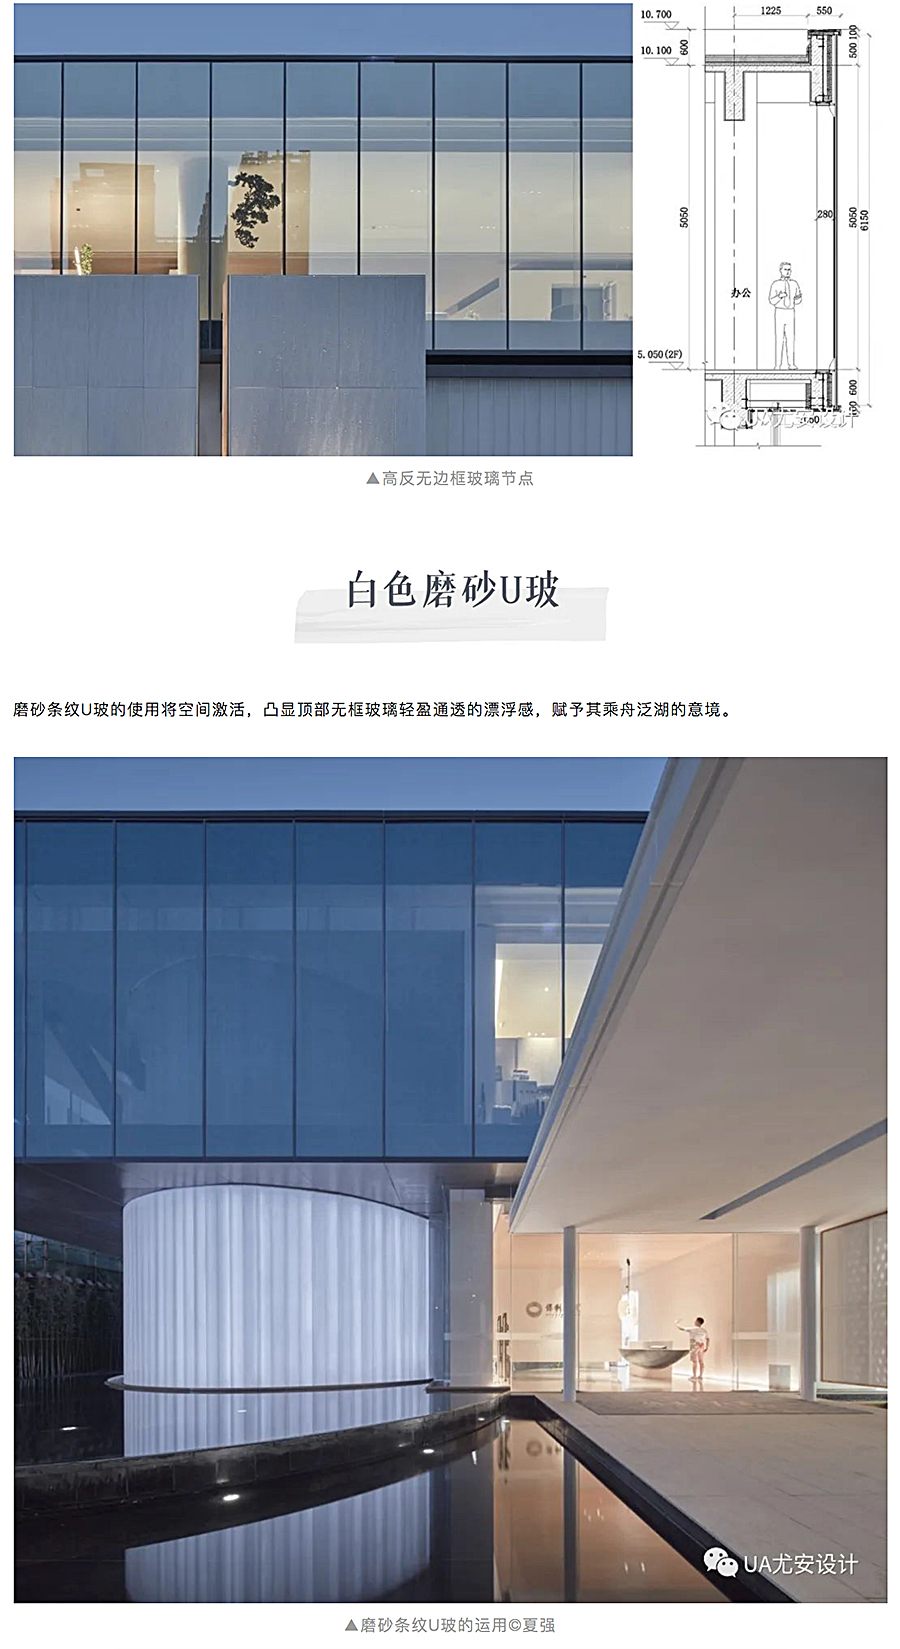 空间的艺术性塑造-_-郑州保利天汇展示中心_0012_图层-13.jpg